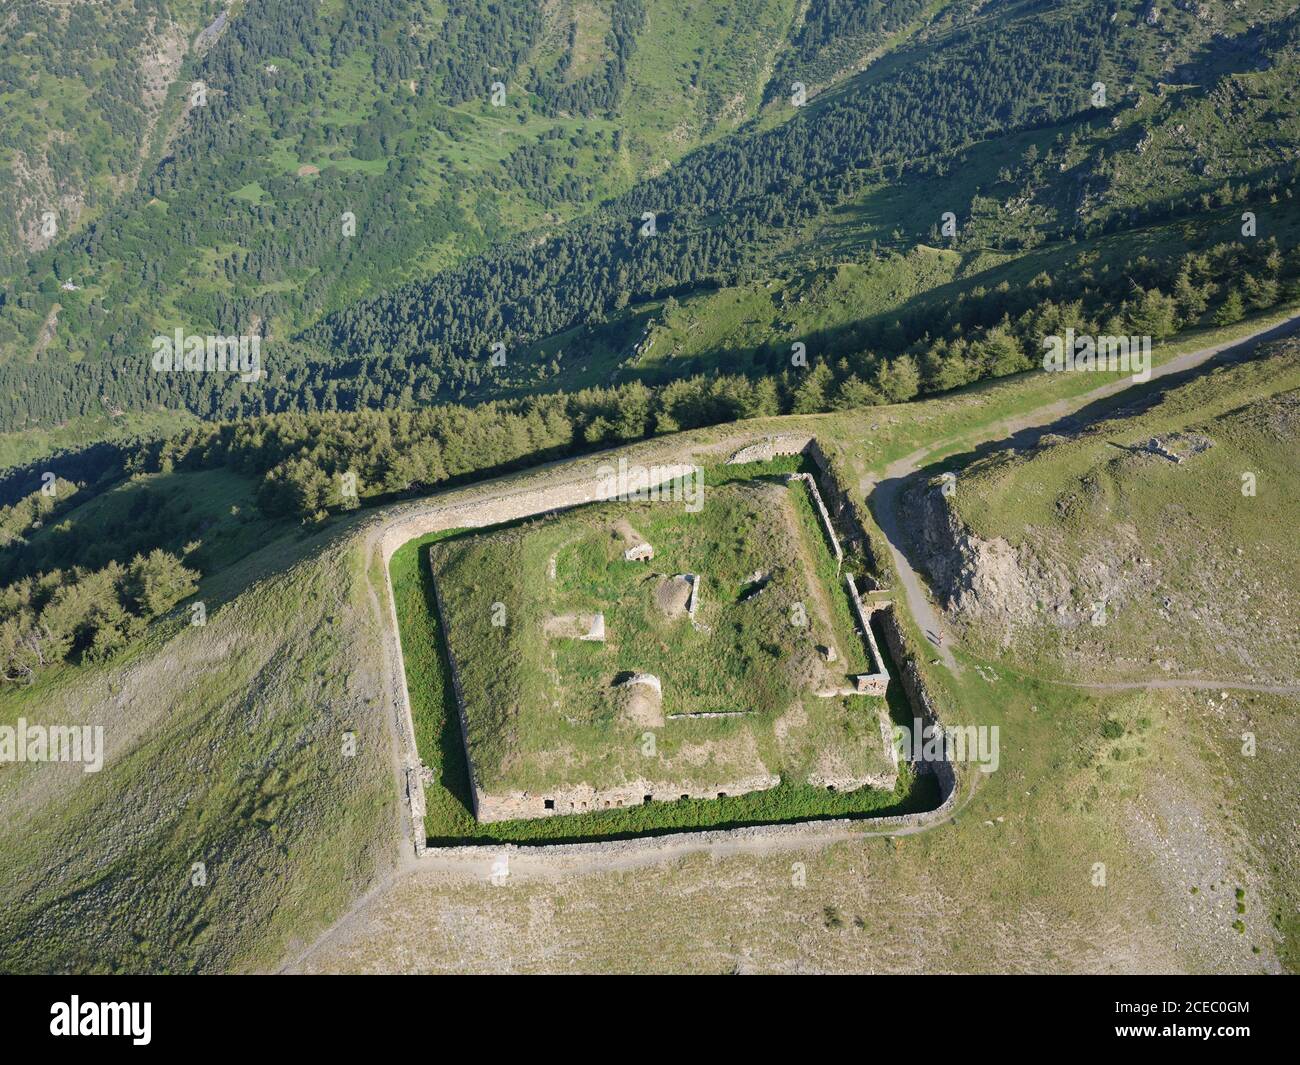 LUFTAUFNAHME. Fort Tabourde, eine alte militärische Festung in der Nähe des Col de Tende. Tende, Alpes-Maritimes, Frankreich. Stockfoto